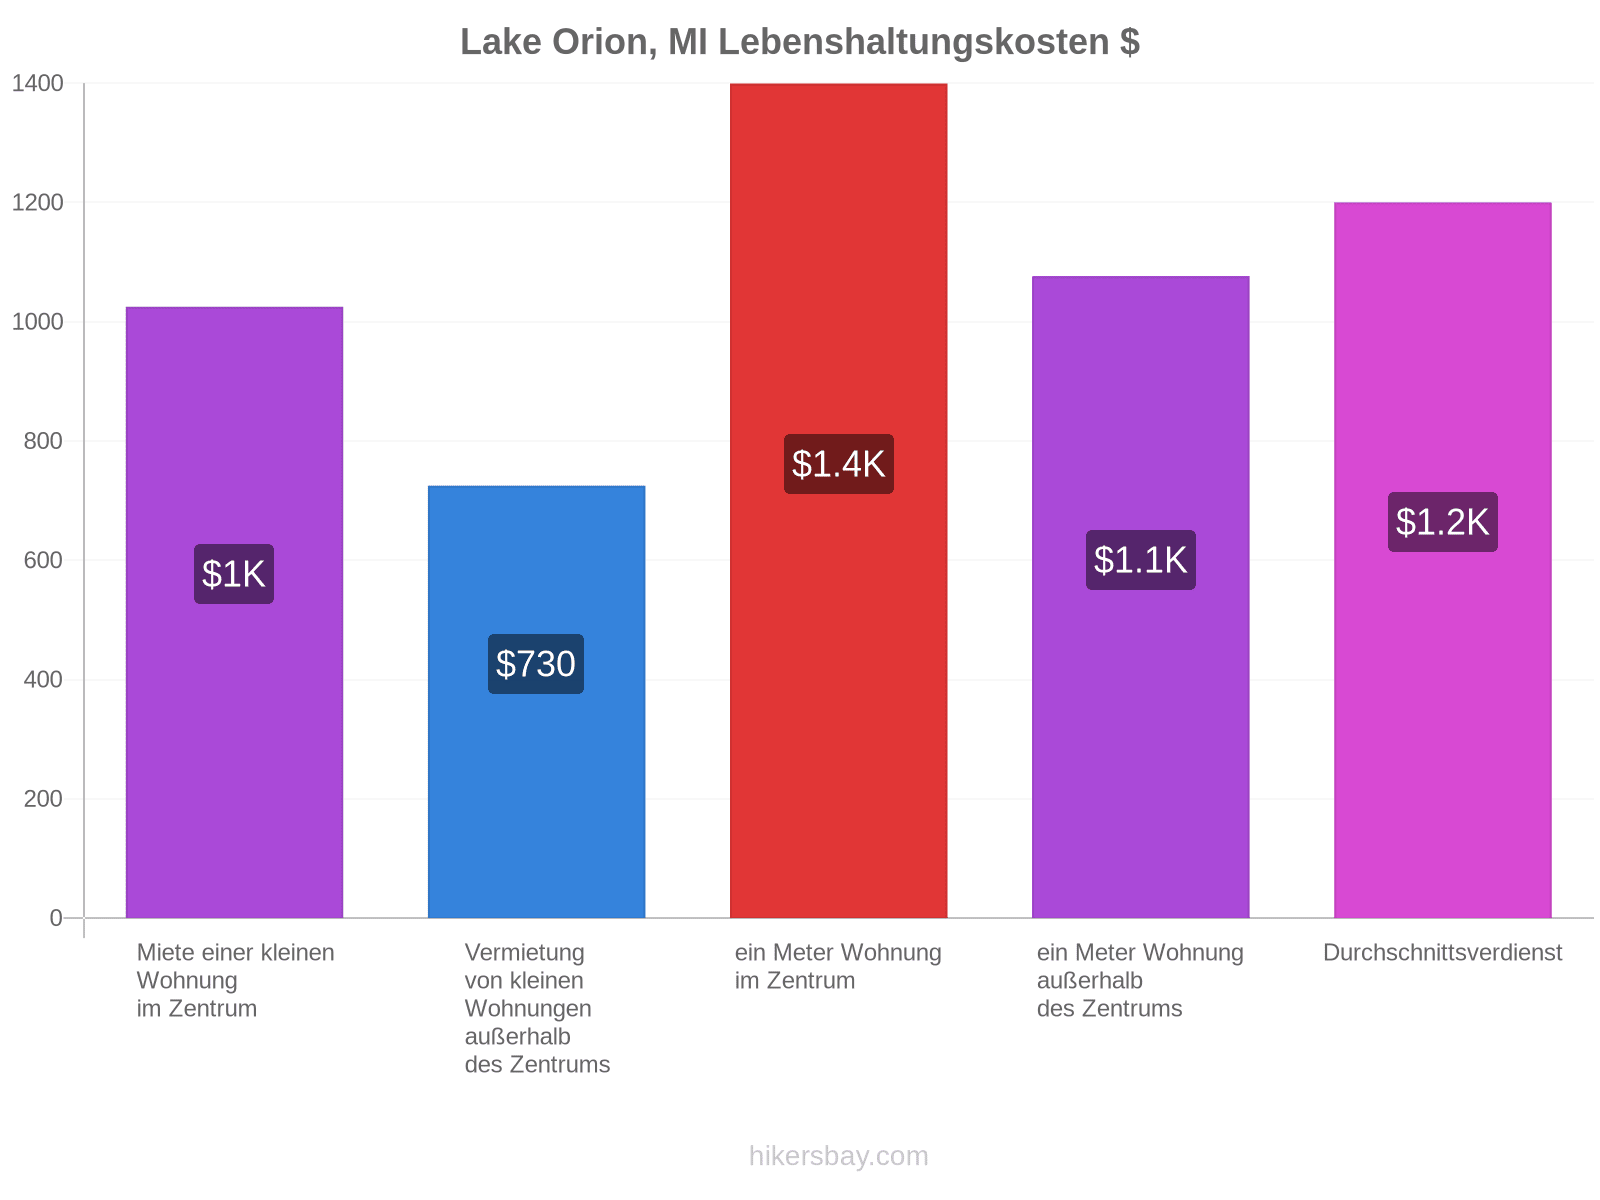 Lake Orion, MI Lebenshaltungskosten hikersbay.com